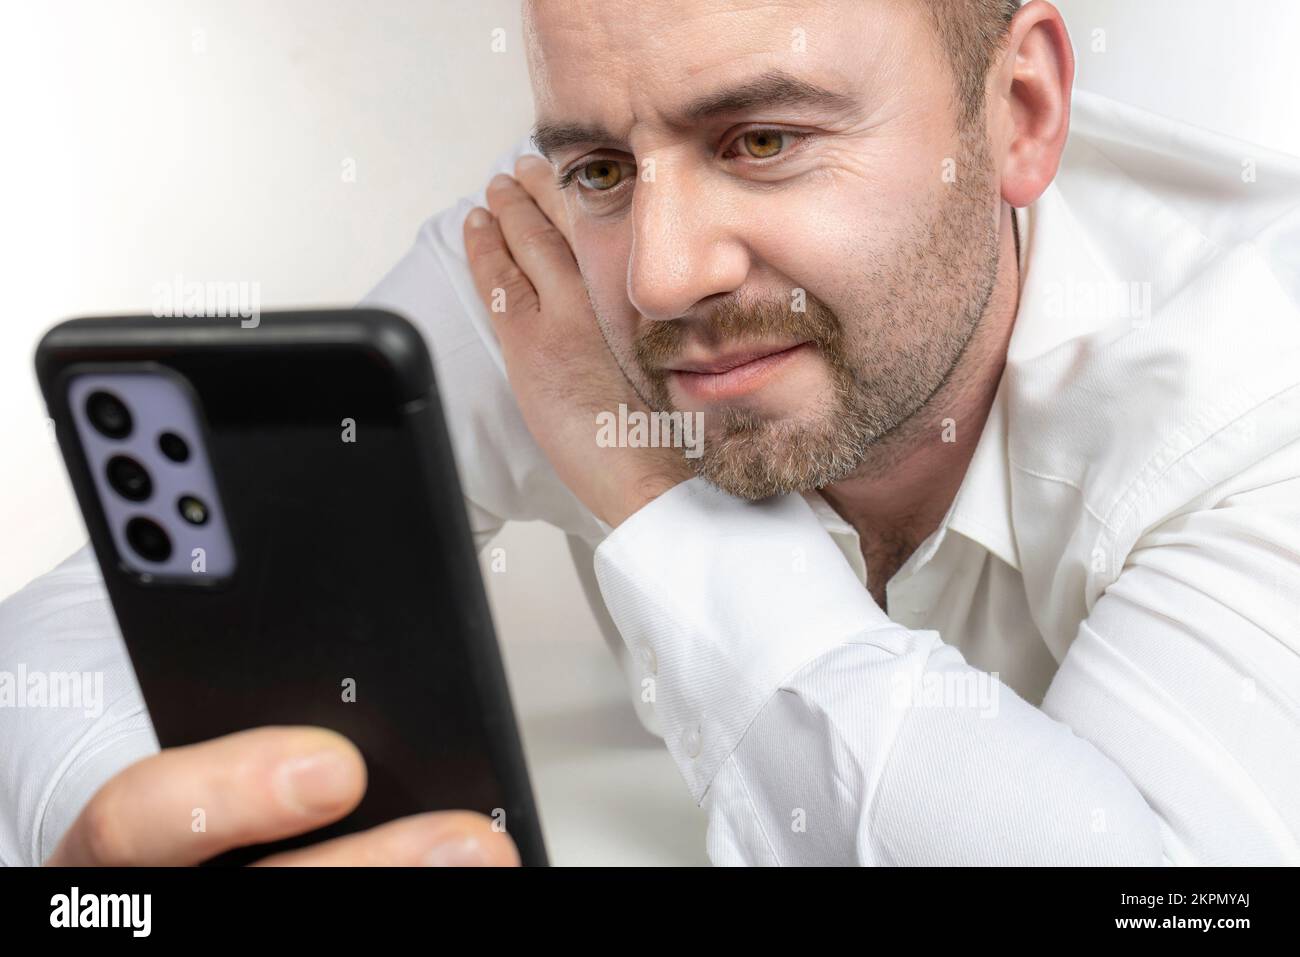 l'homme caucasien avec la barbe utilise un smartphone. prise de vue en studio Banque D'Images